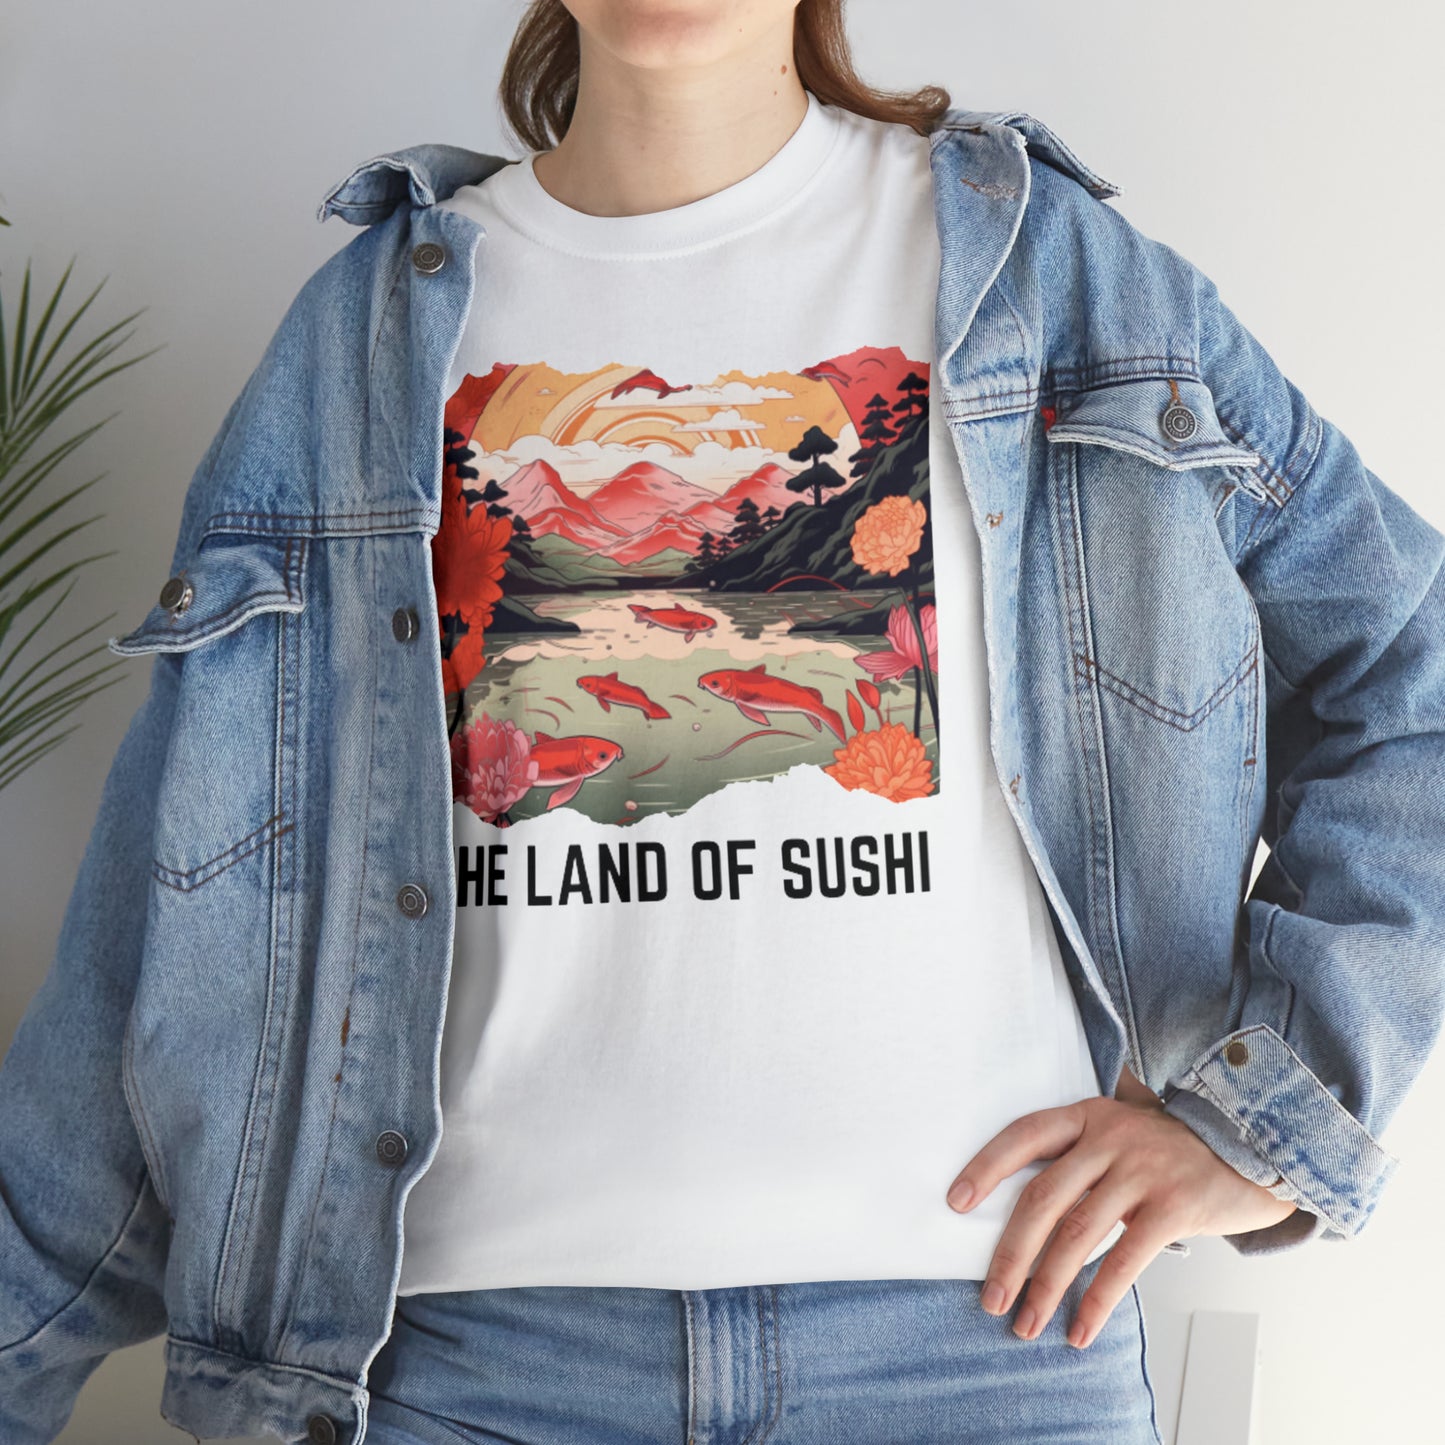 The Land of Sushi